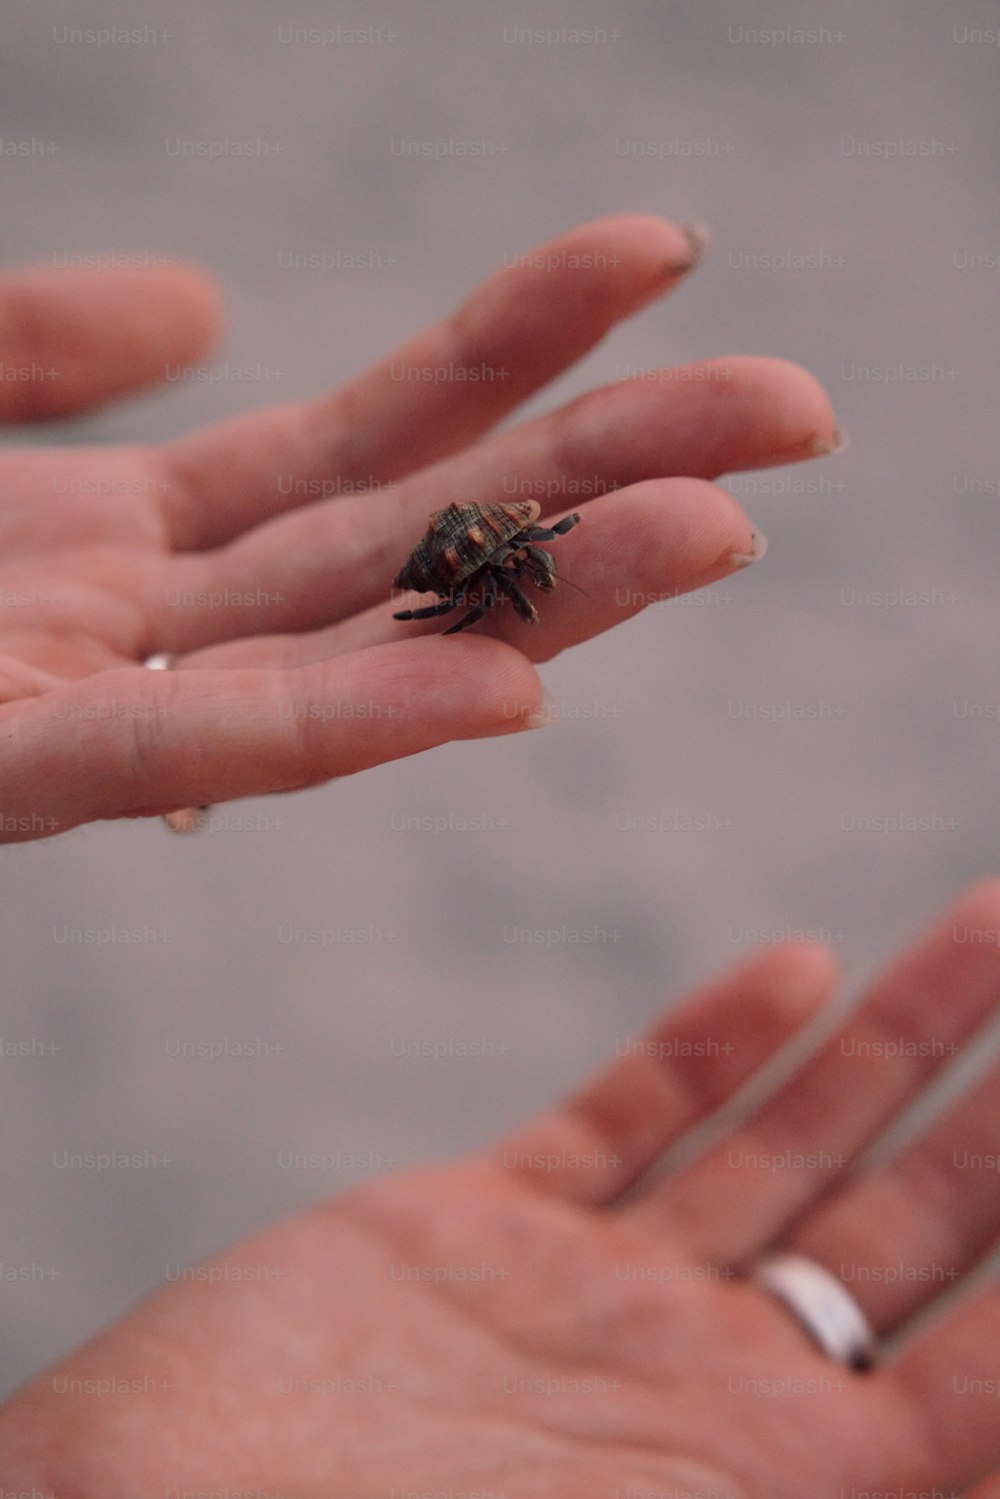 Un pequeño insecto sentado encima de la mano de una persona